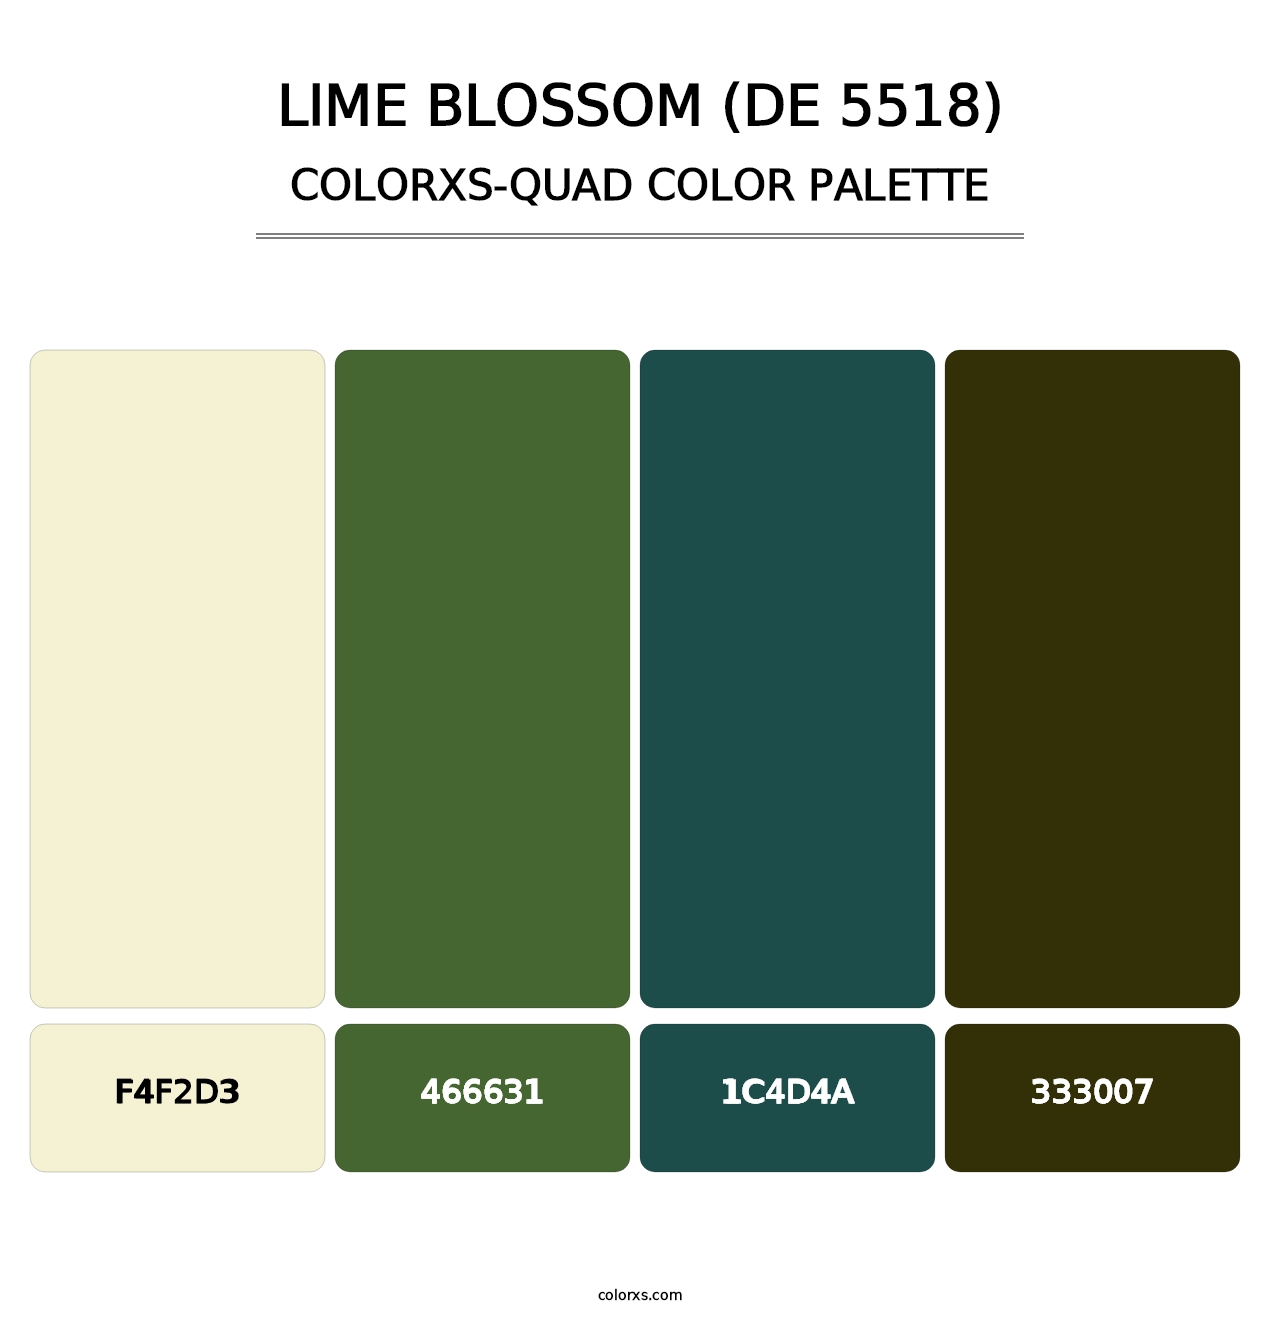 Lime Blossom (DE 5518) - Colorxs Quad Palette